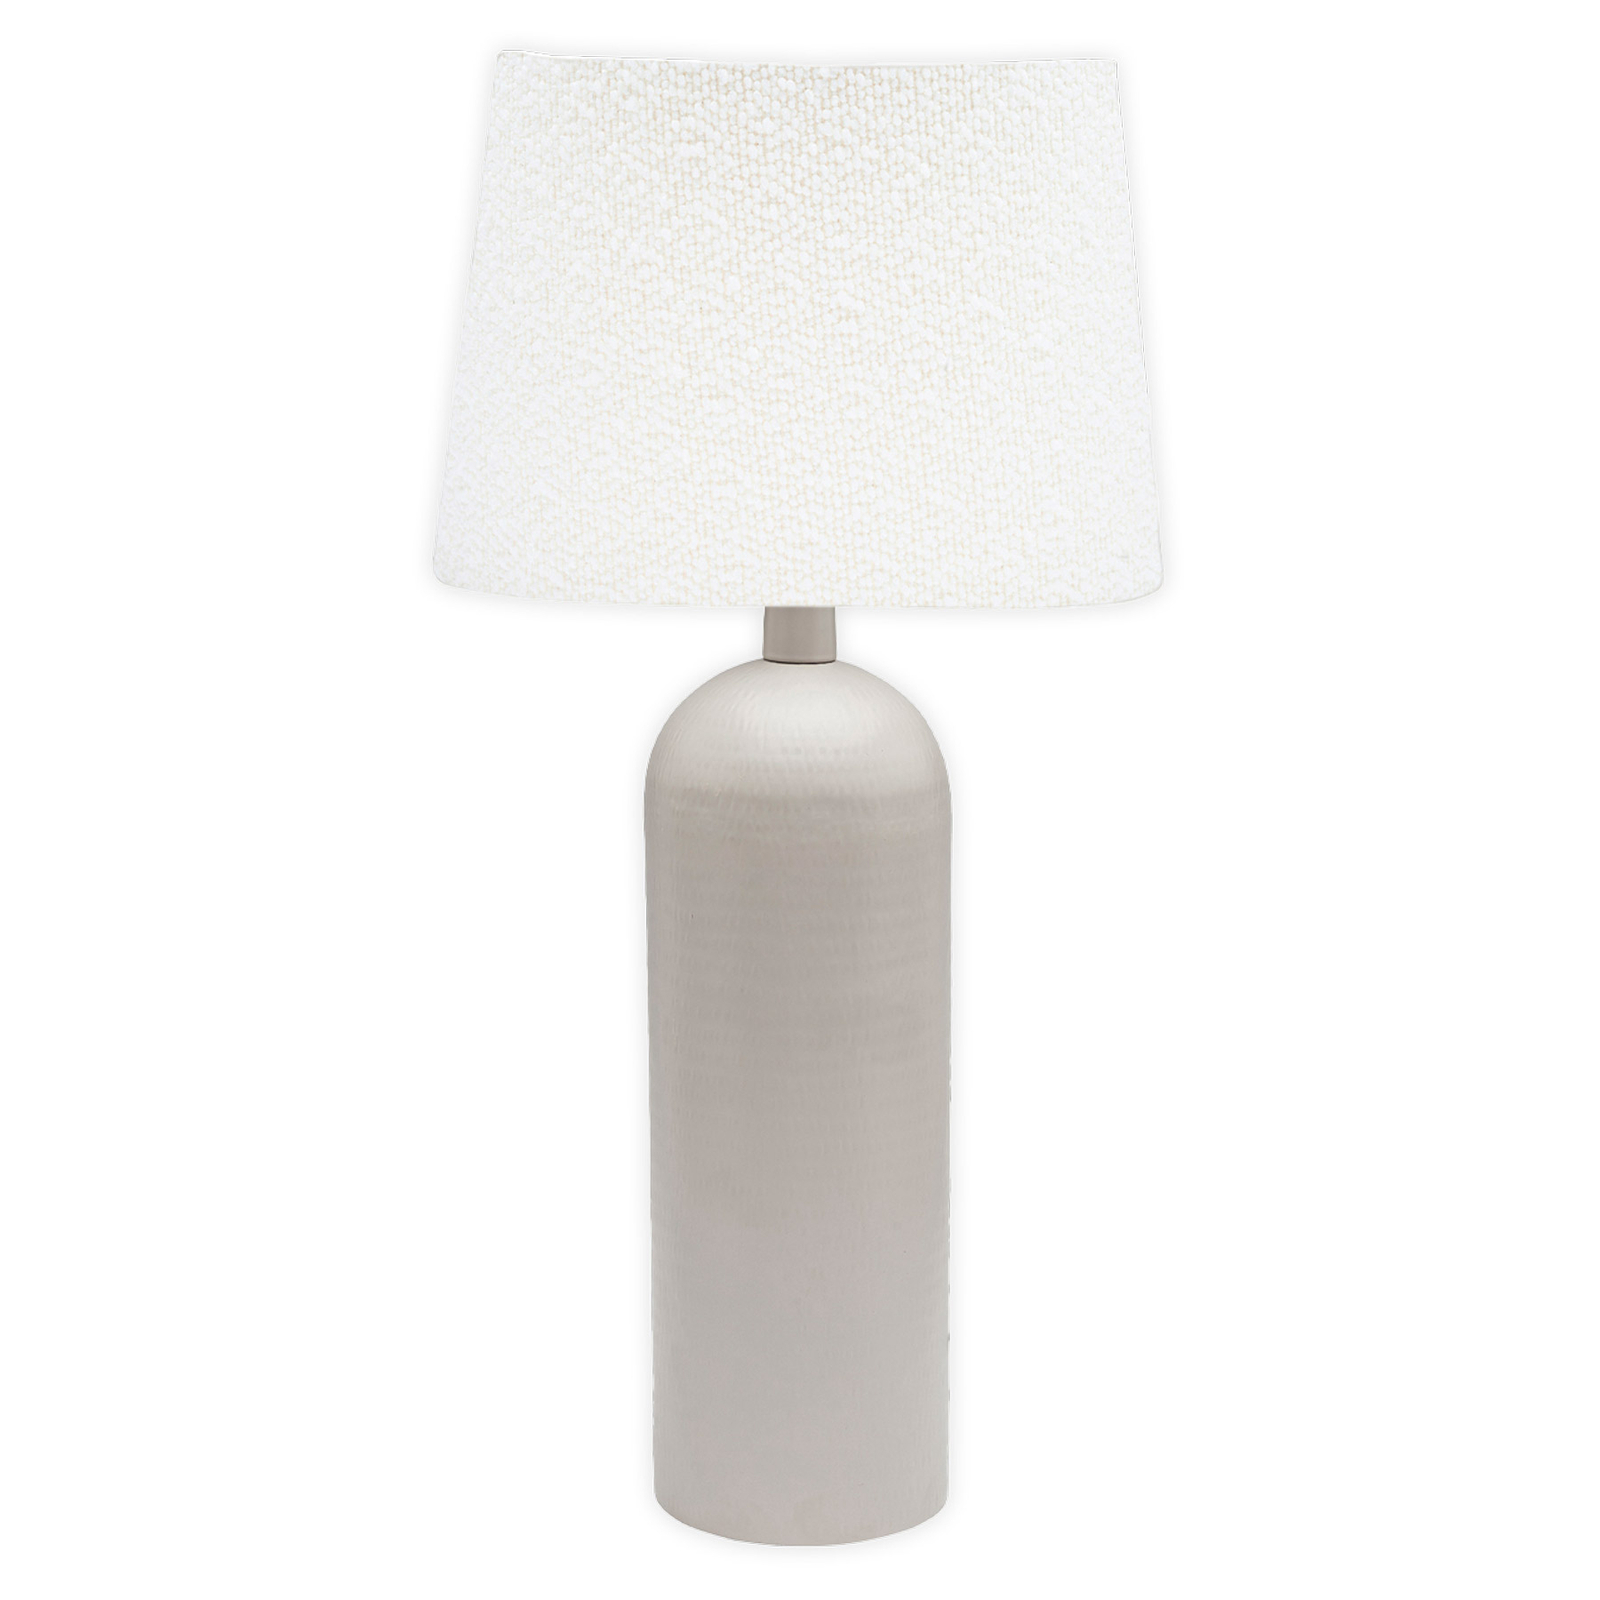 PR Home Riley lampa stołowa, biała/beżowa, 54 cm